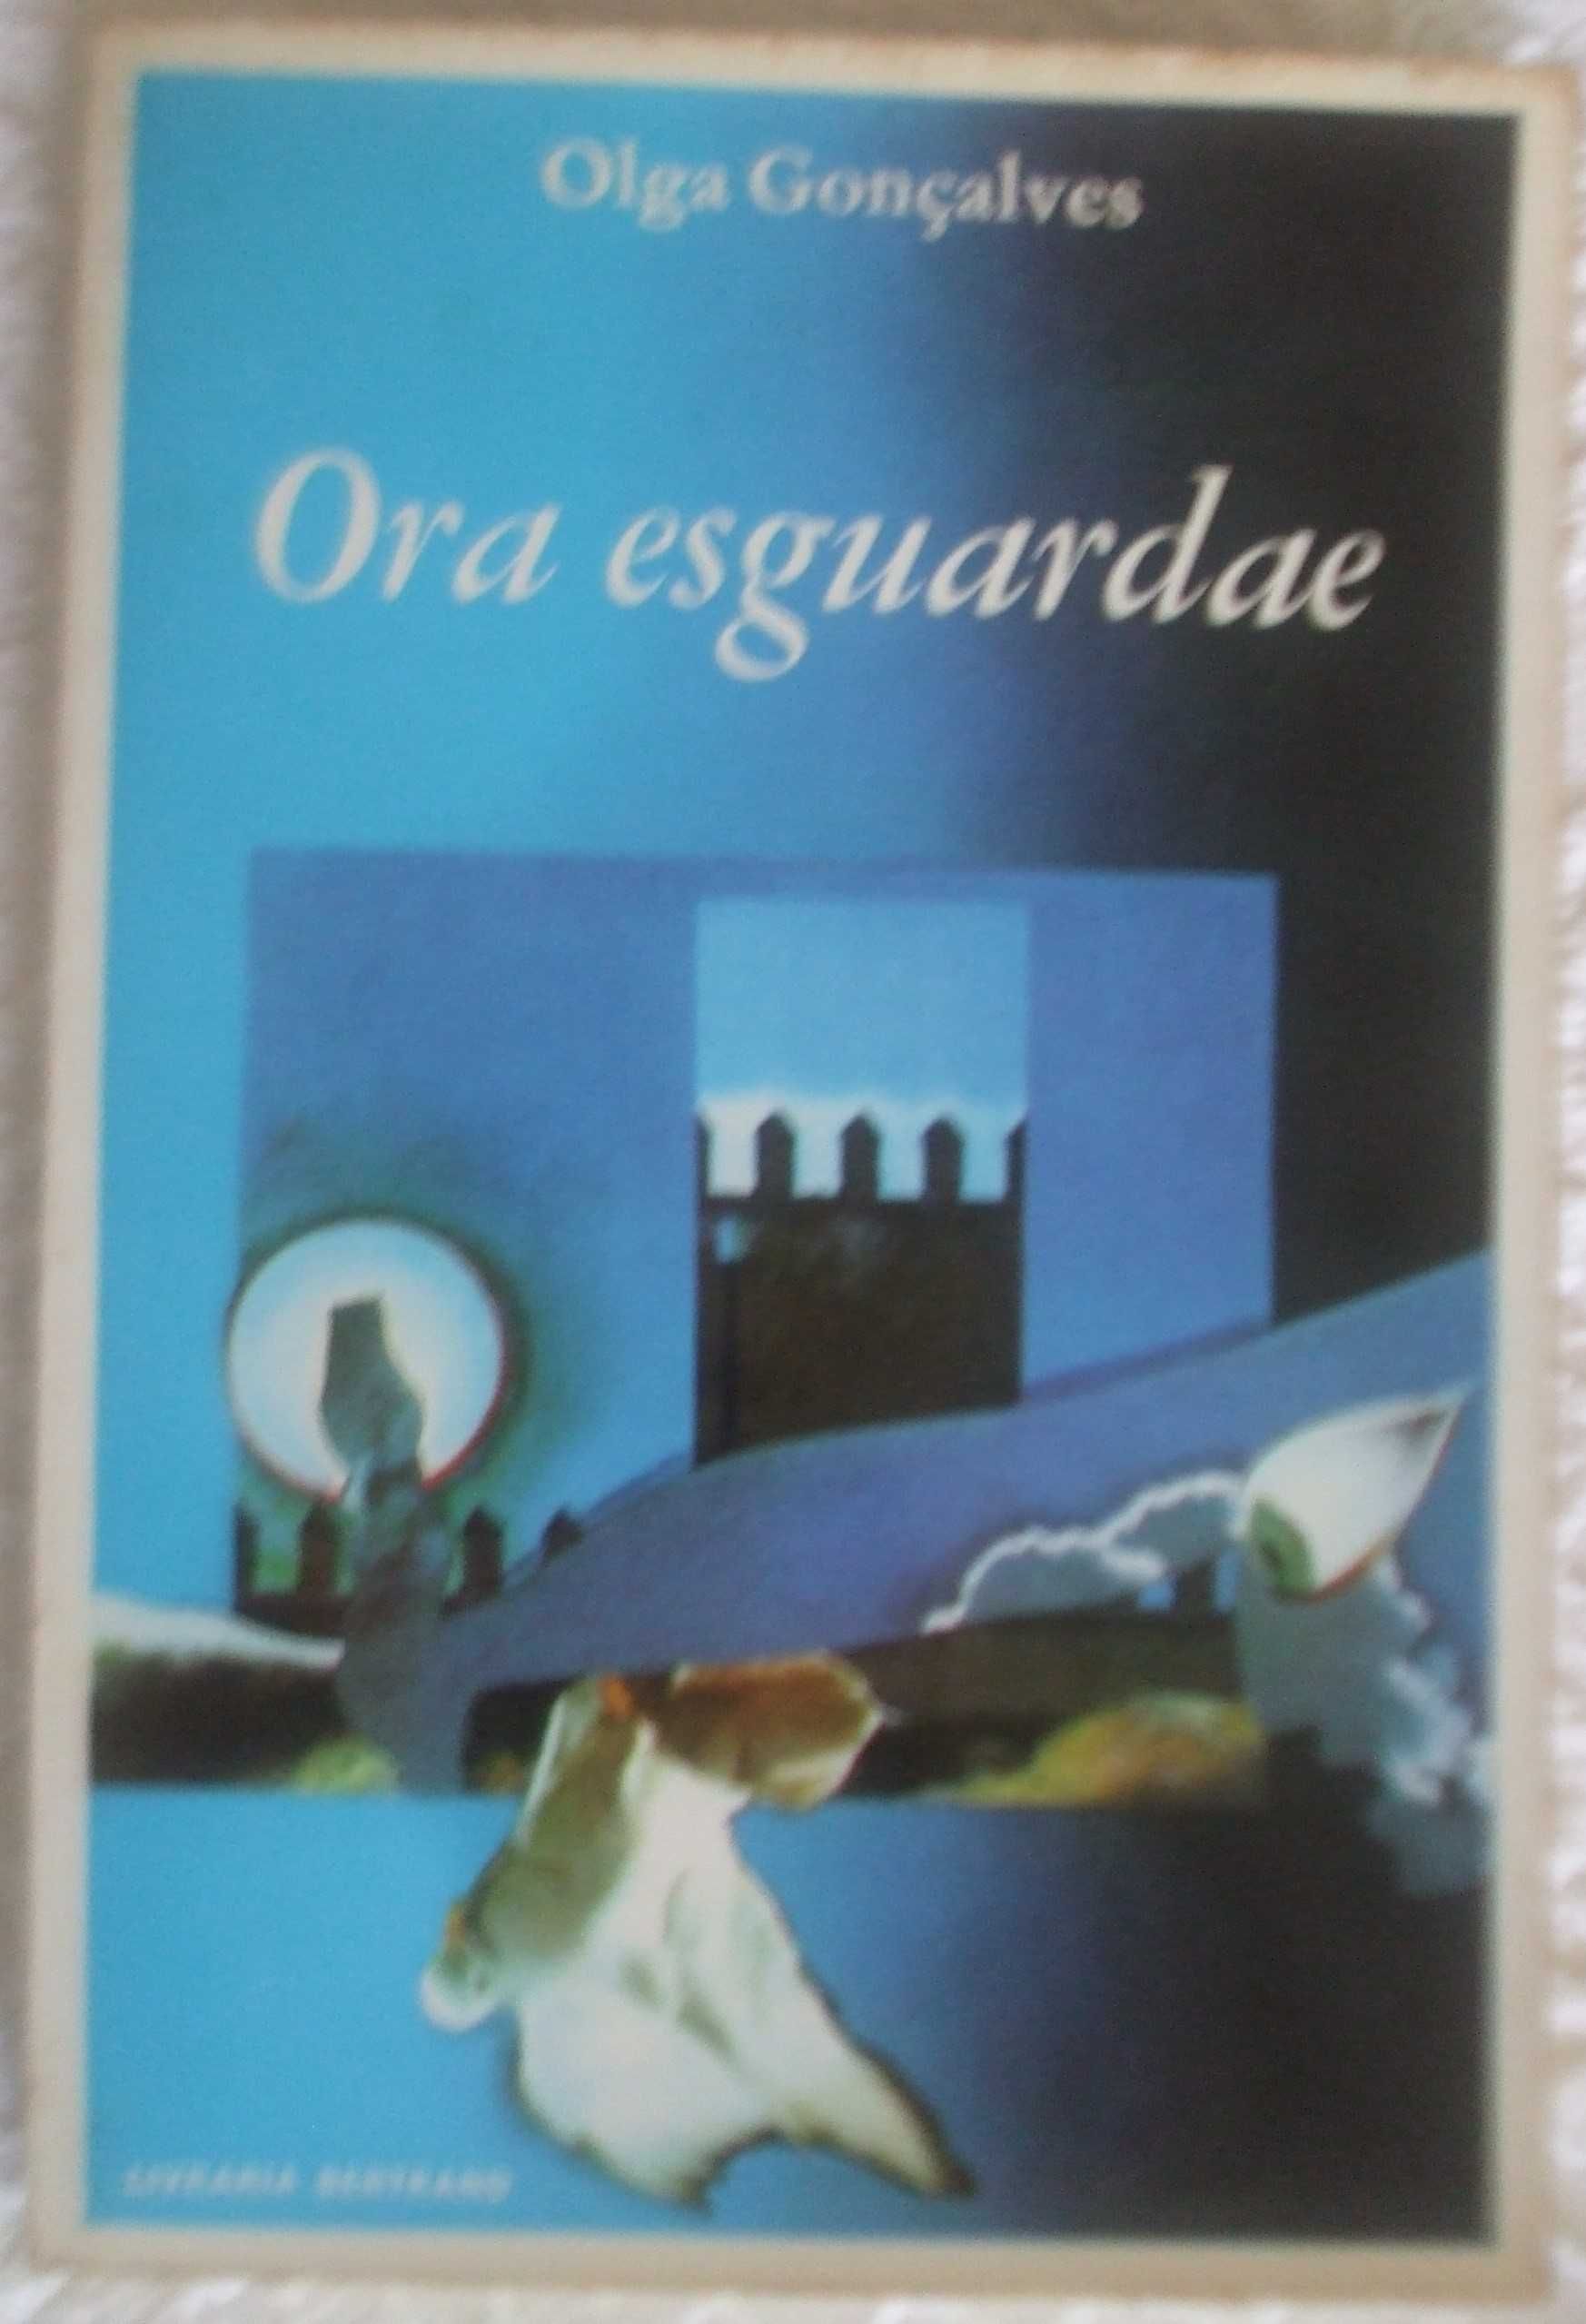 Ora esguardae, Olga Gonçalves